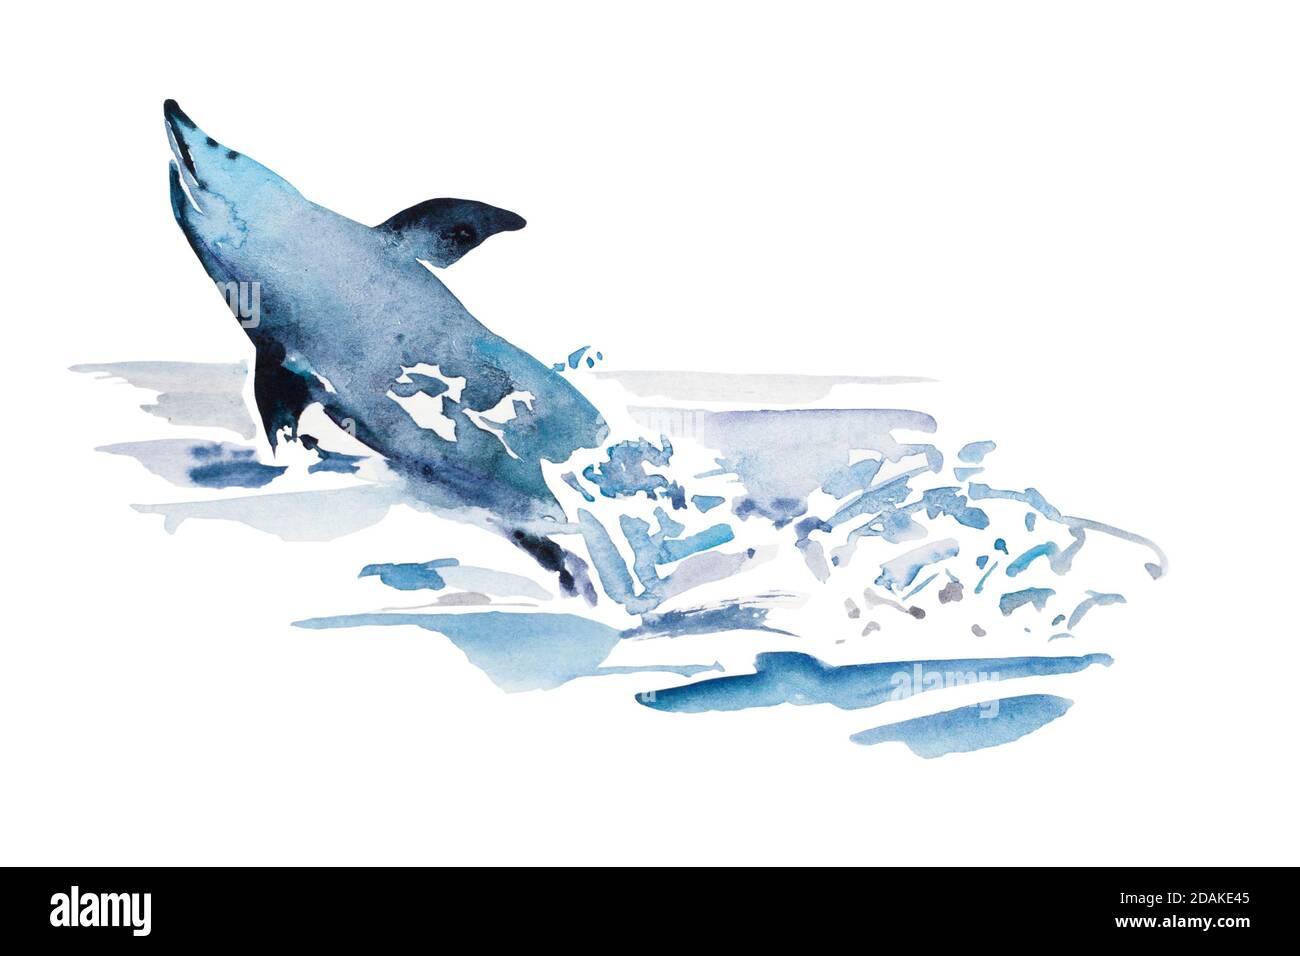 Divertente salto di delfino blu acquerello dall'acqua nella spruzzata di schiuma. Illustrazione originale di animale marino, isolato su sfondo bianco Foto Stock